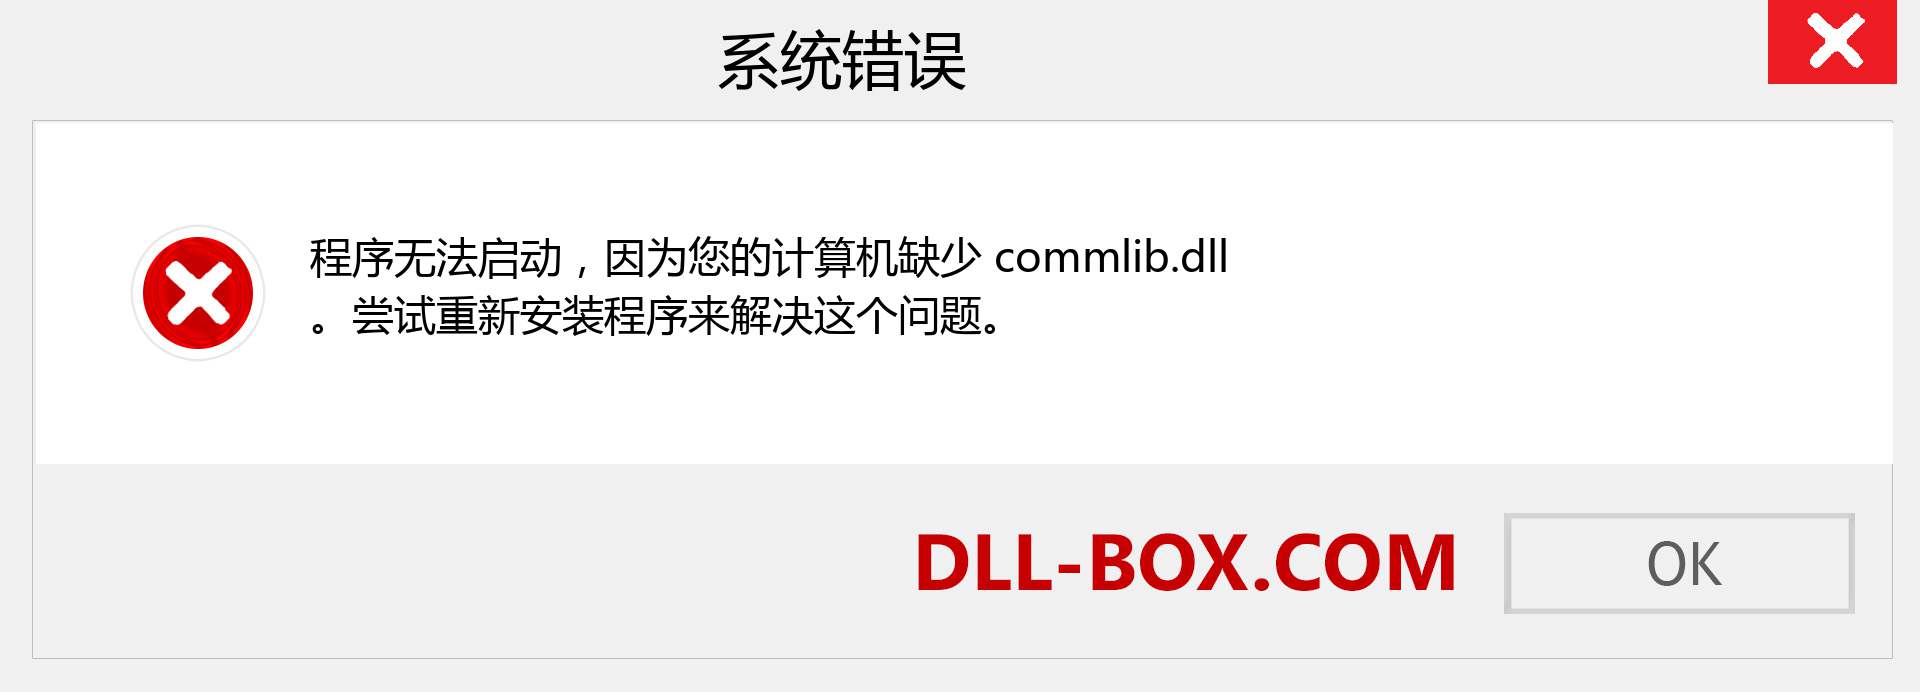 commlib.dll 文件丢失？。 适用于 Windows 7、8、10 的下载 - 修复 Windows、照片、图像上的 commlib dll 丢失错误